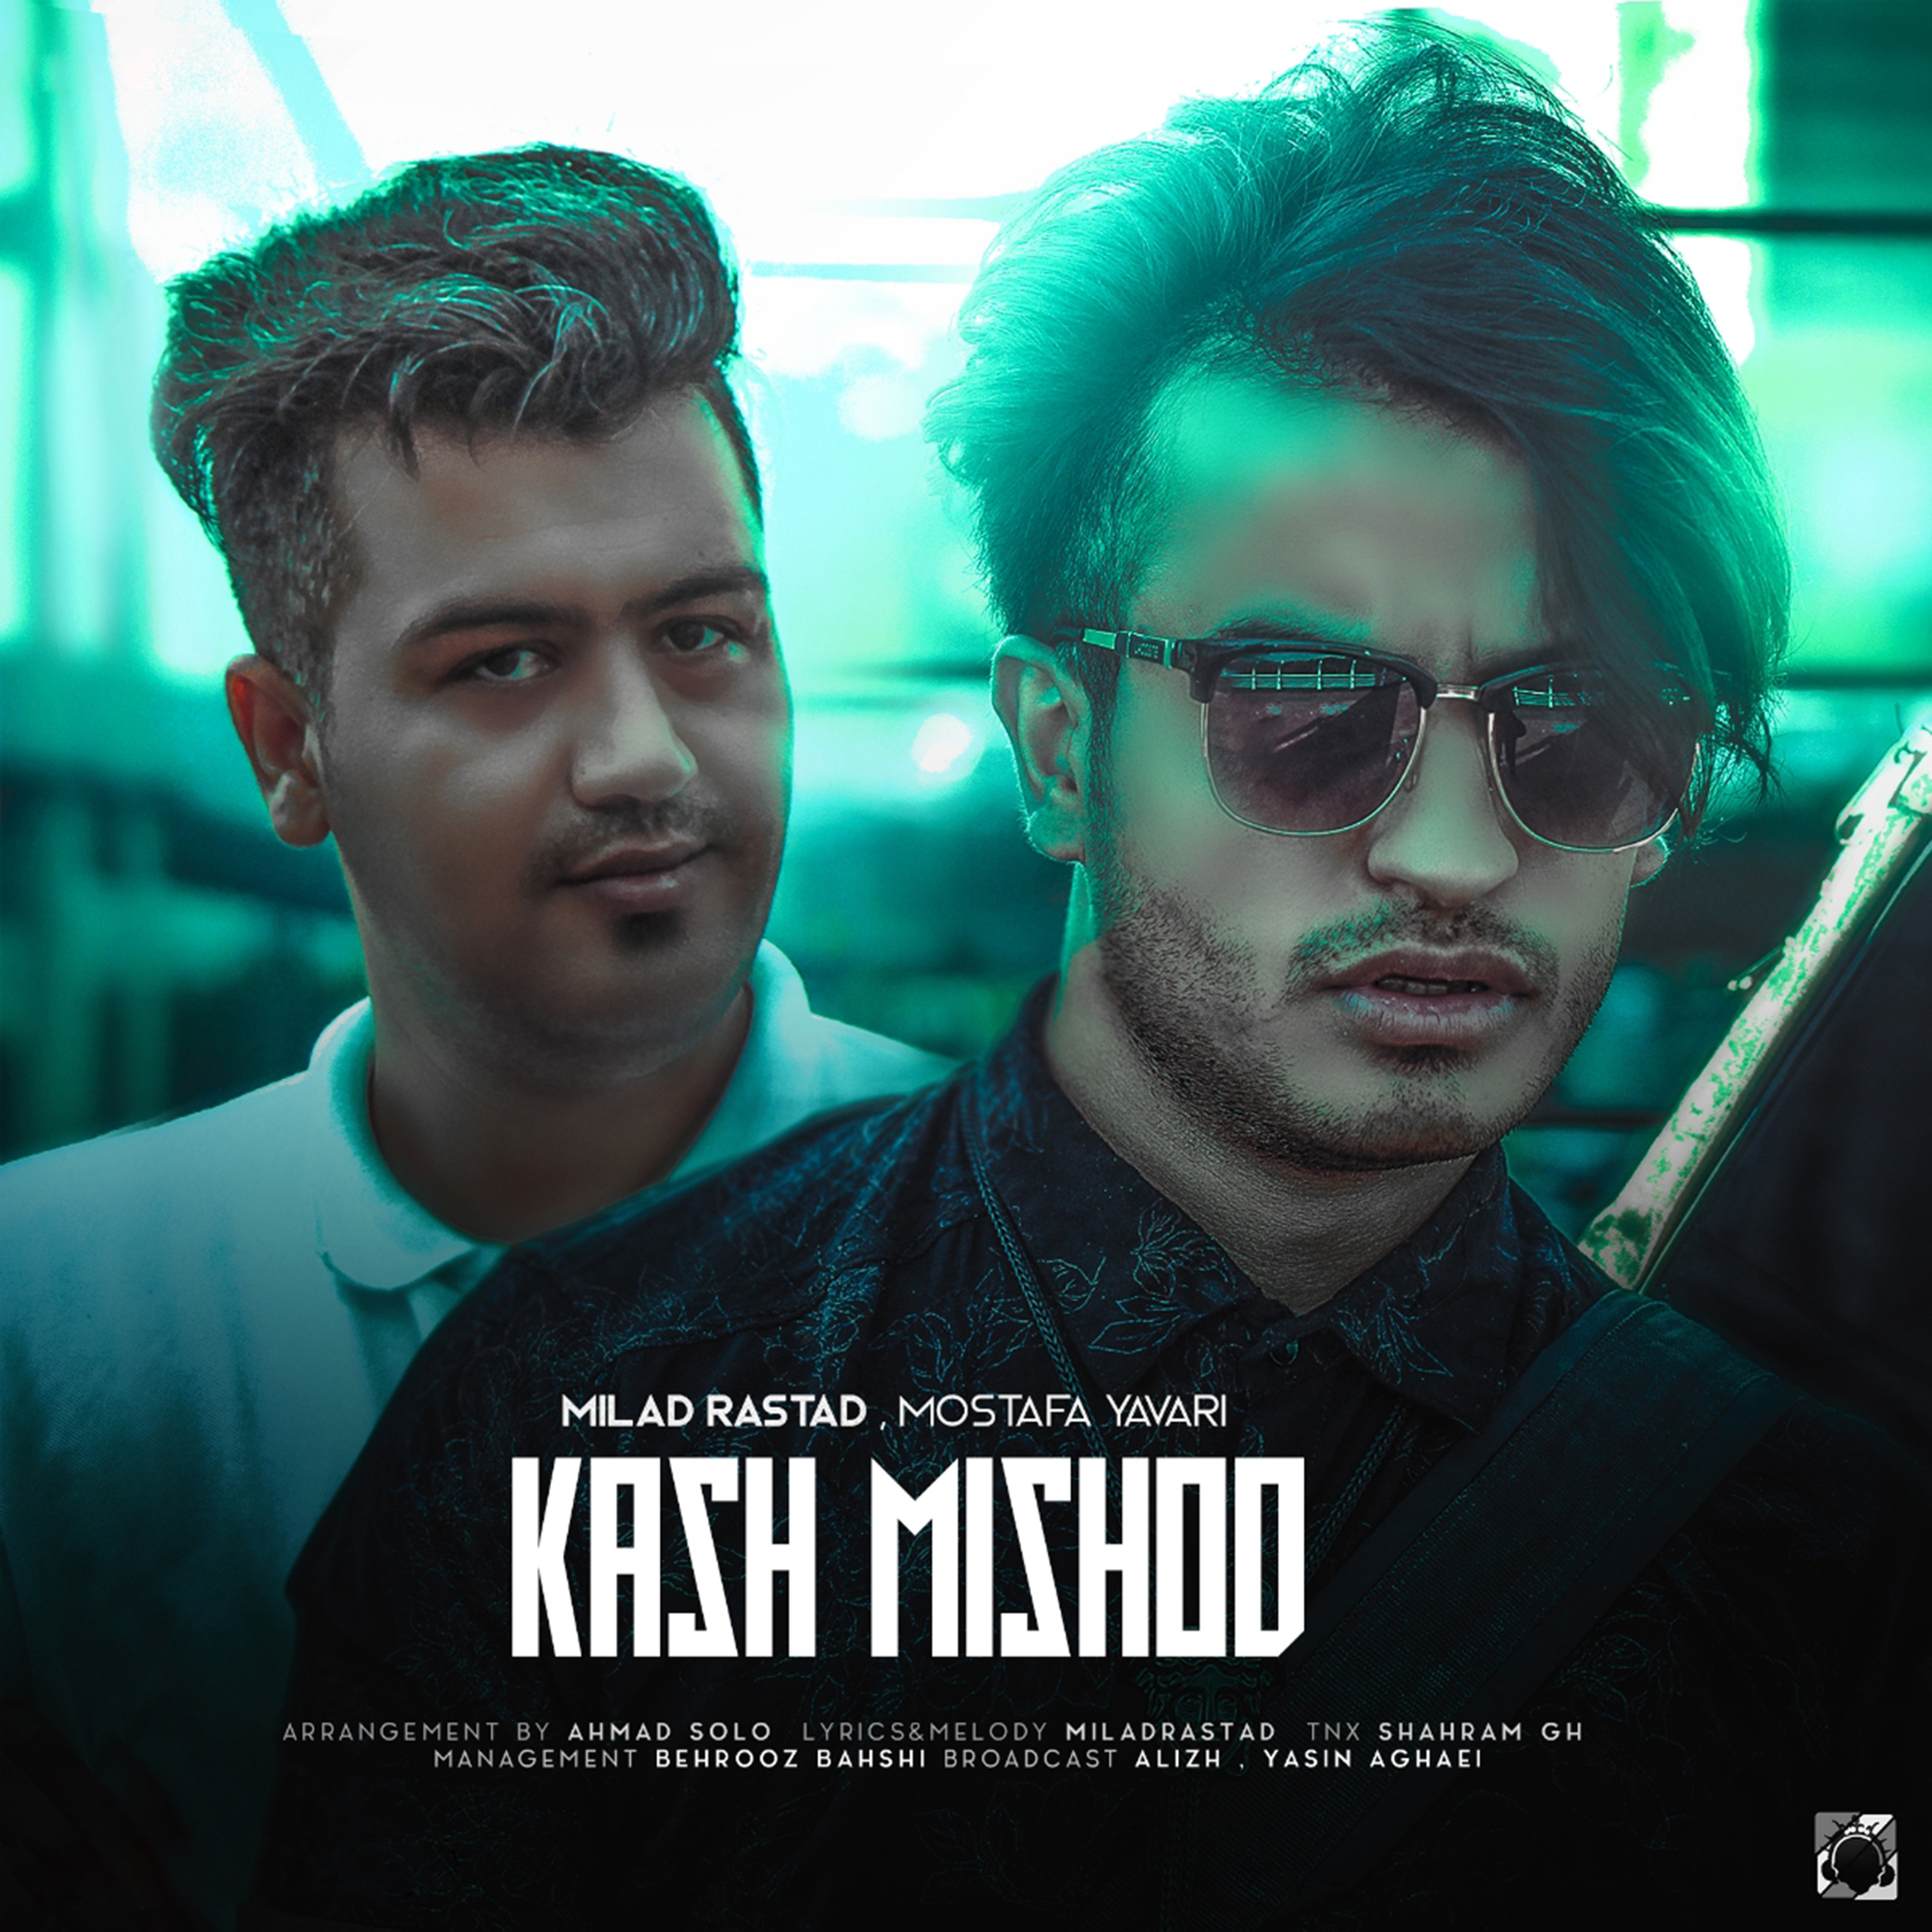  دانلود آهنگ جدید میلاد راستاد - کاش میشد | Download New Music By Milad Rastad - Kash Mishod (feat. Mostafa Yavari)